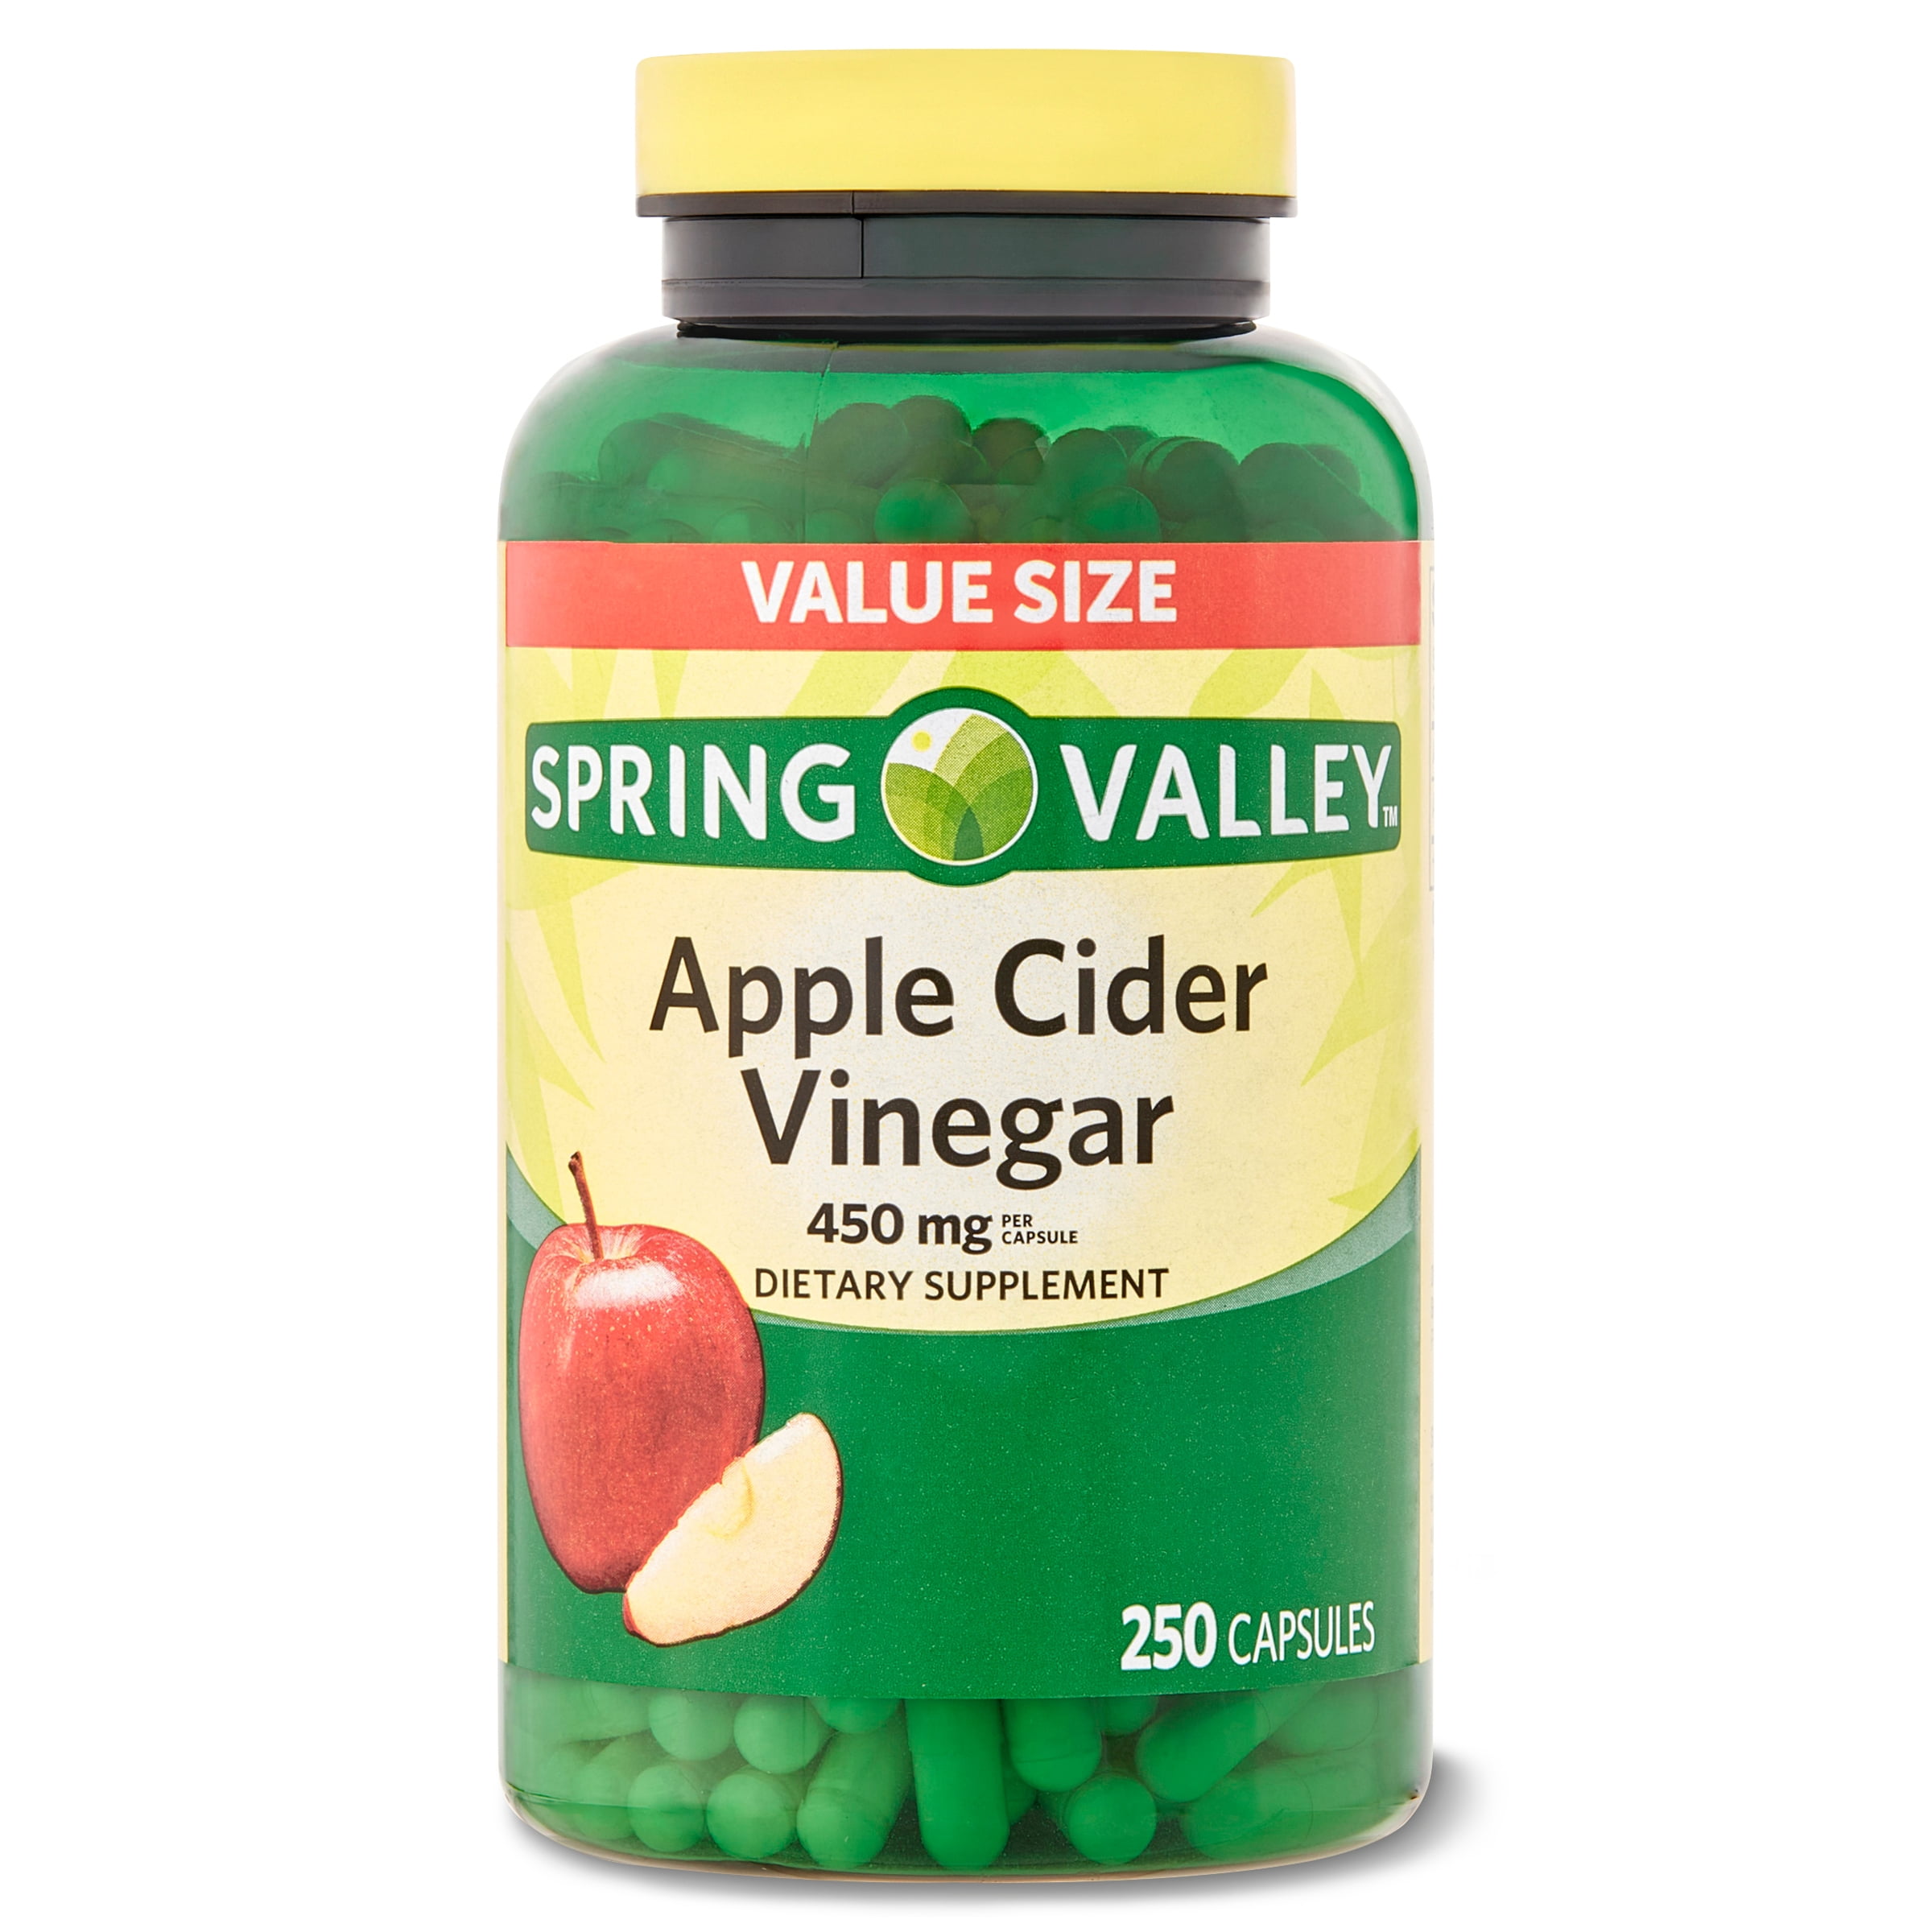 Bragg Apple Cider Vinegar Pills alternative: Spring Valley Apple Cider Vinegar 